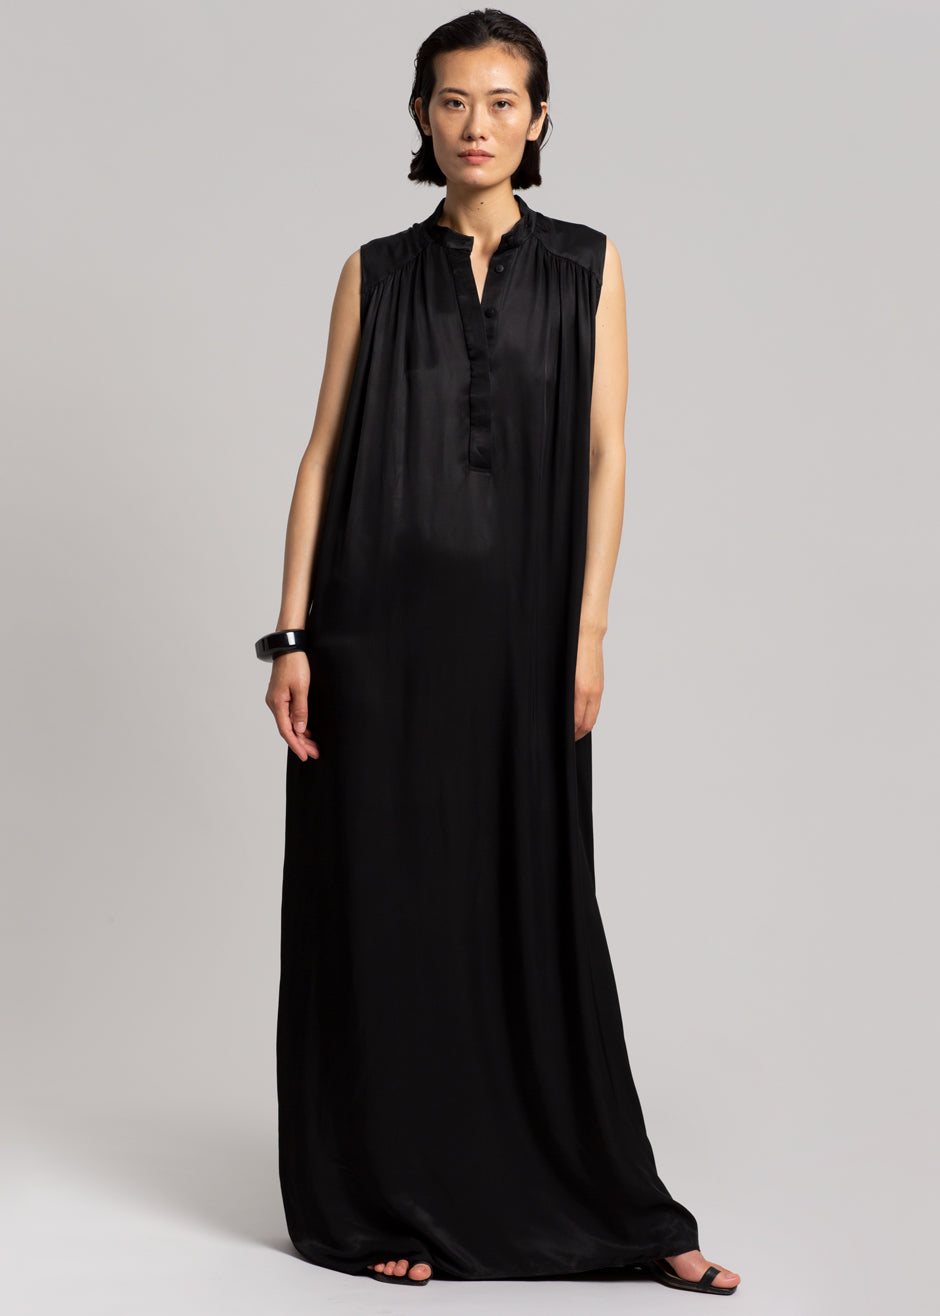 MATIN Sleeveless Button-up Dress - Black - 5